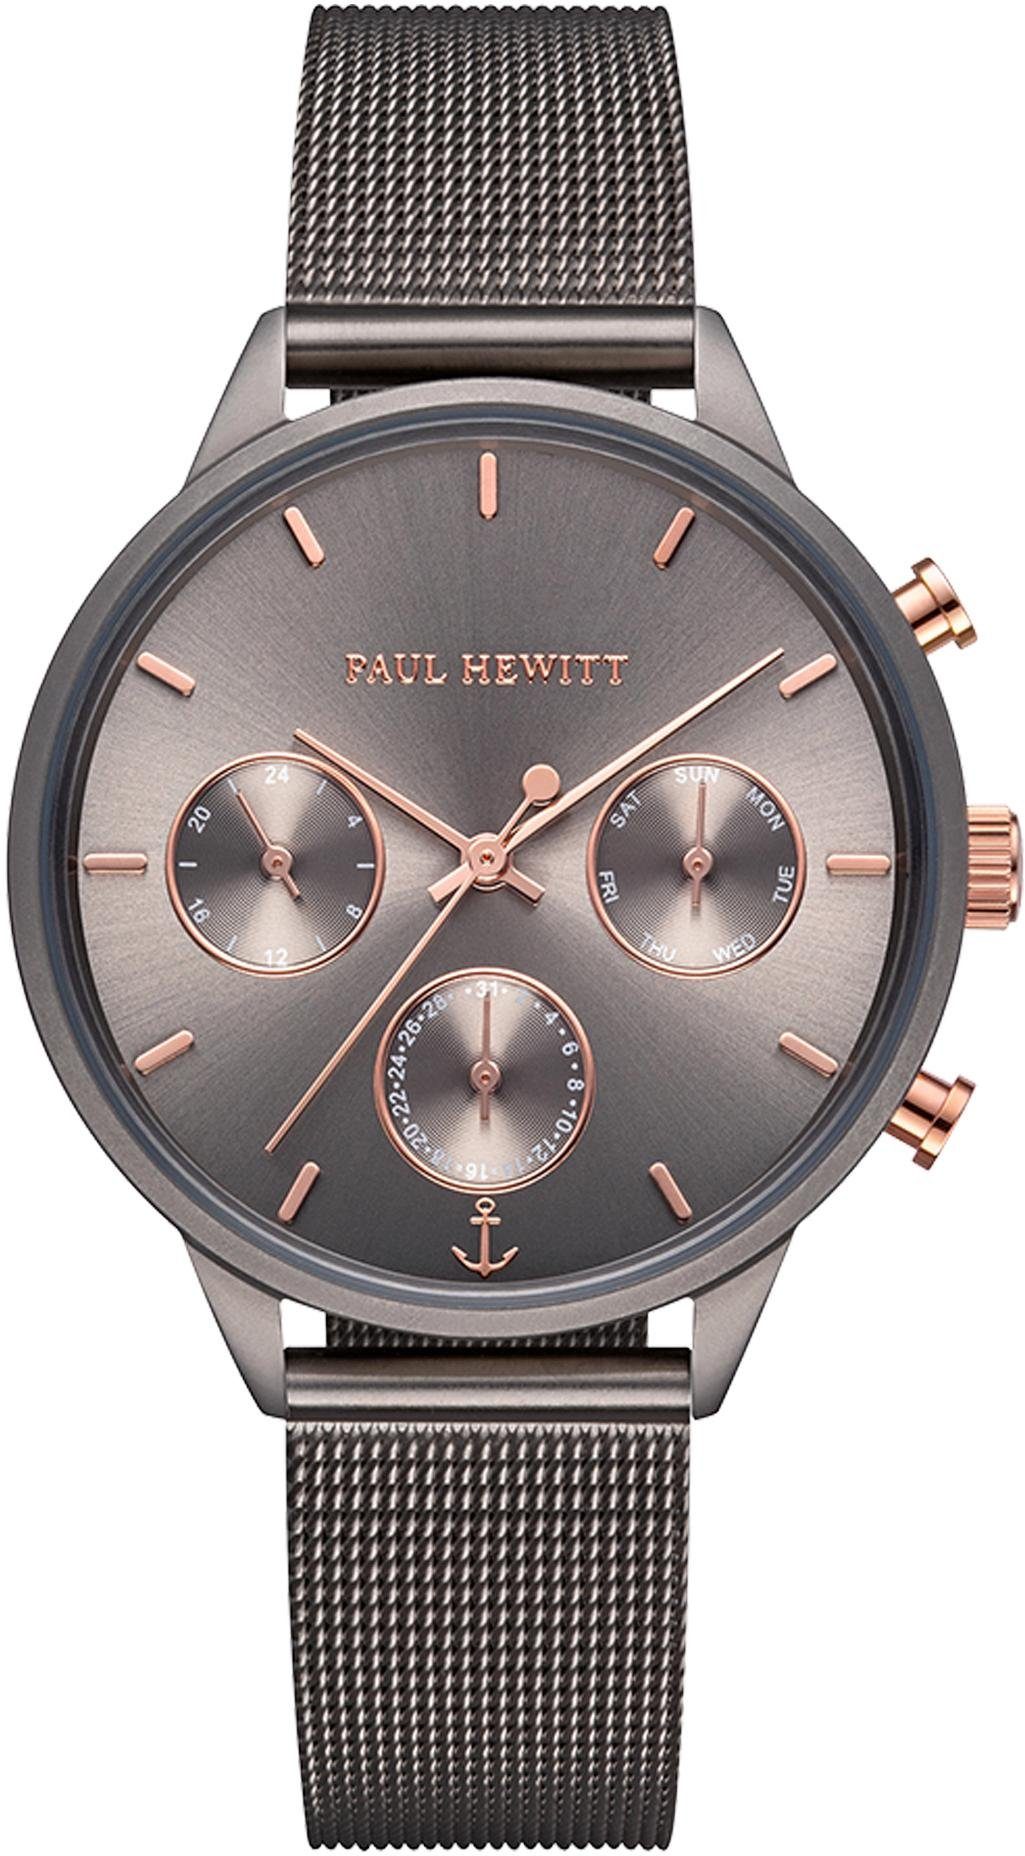 PAUL HEWITT Uhr online kaufen | OTTO